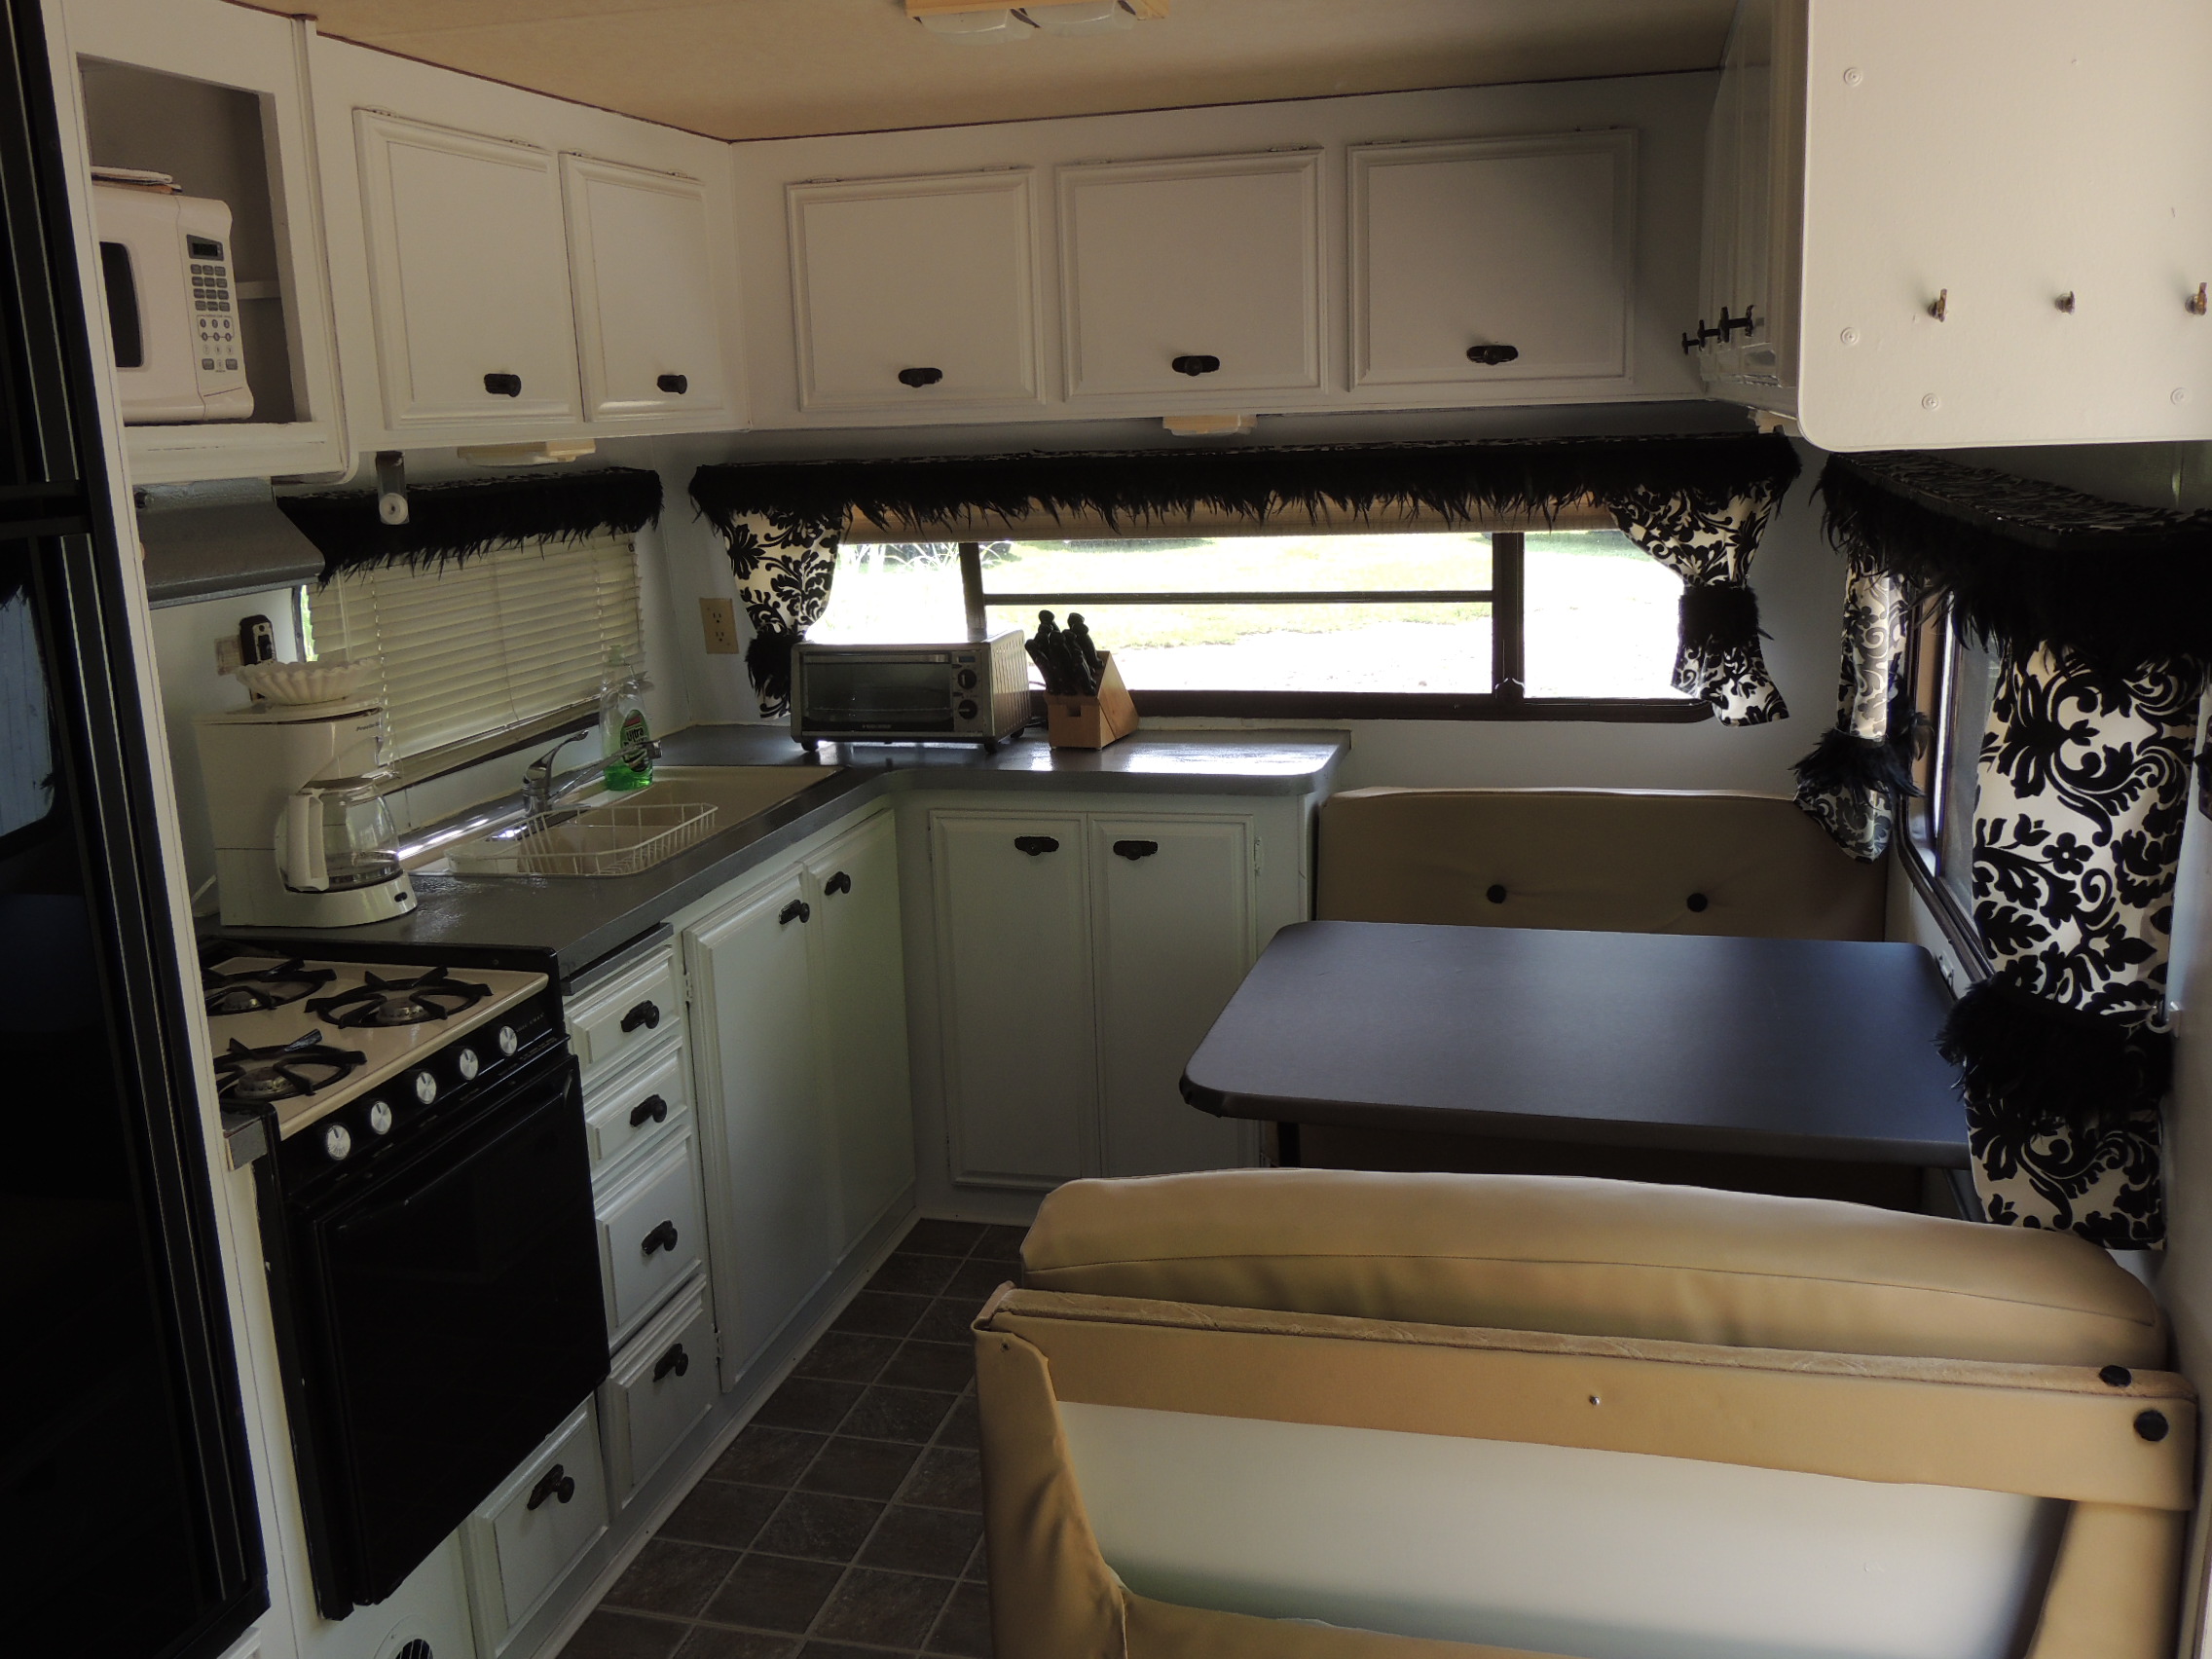 Retro trailer interior view of the kitchen